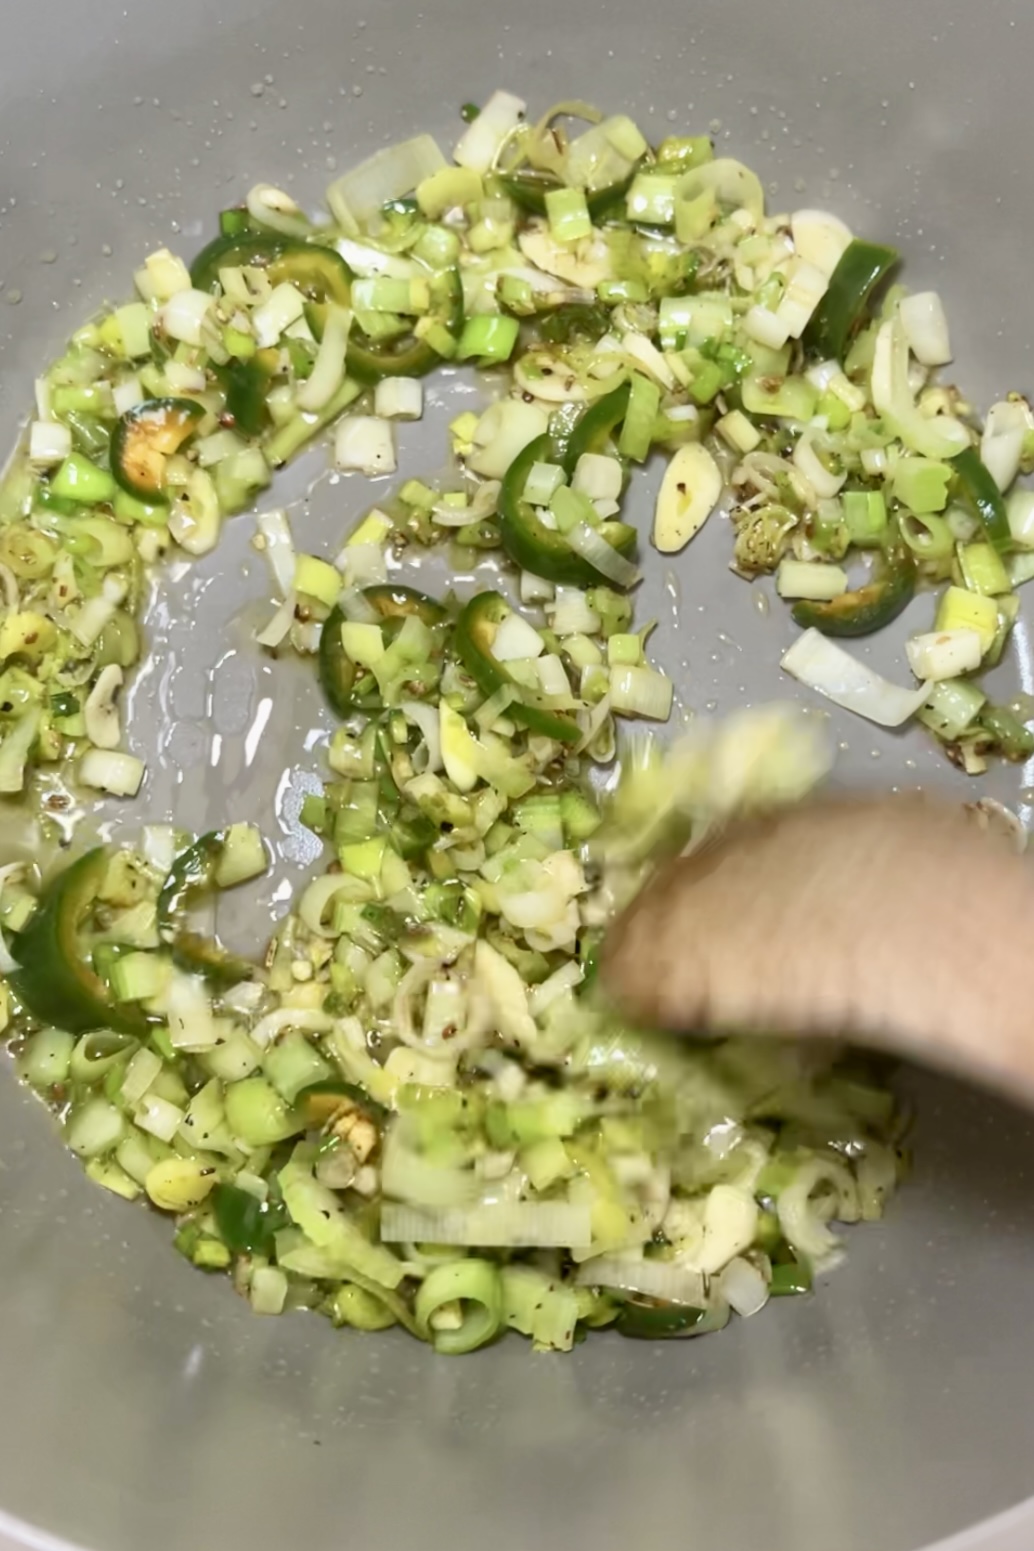 Una imagen de primer plano de puerros verdes picados y ajo salteados en una sartén plateada, con burbujas de aceite visibles, para una receta de Minestrone Verde. Una cuchara de madera está removiendo la mezcla.